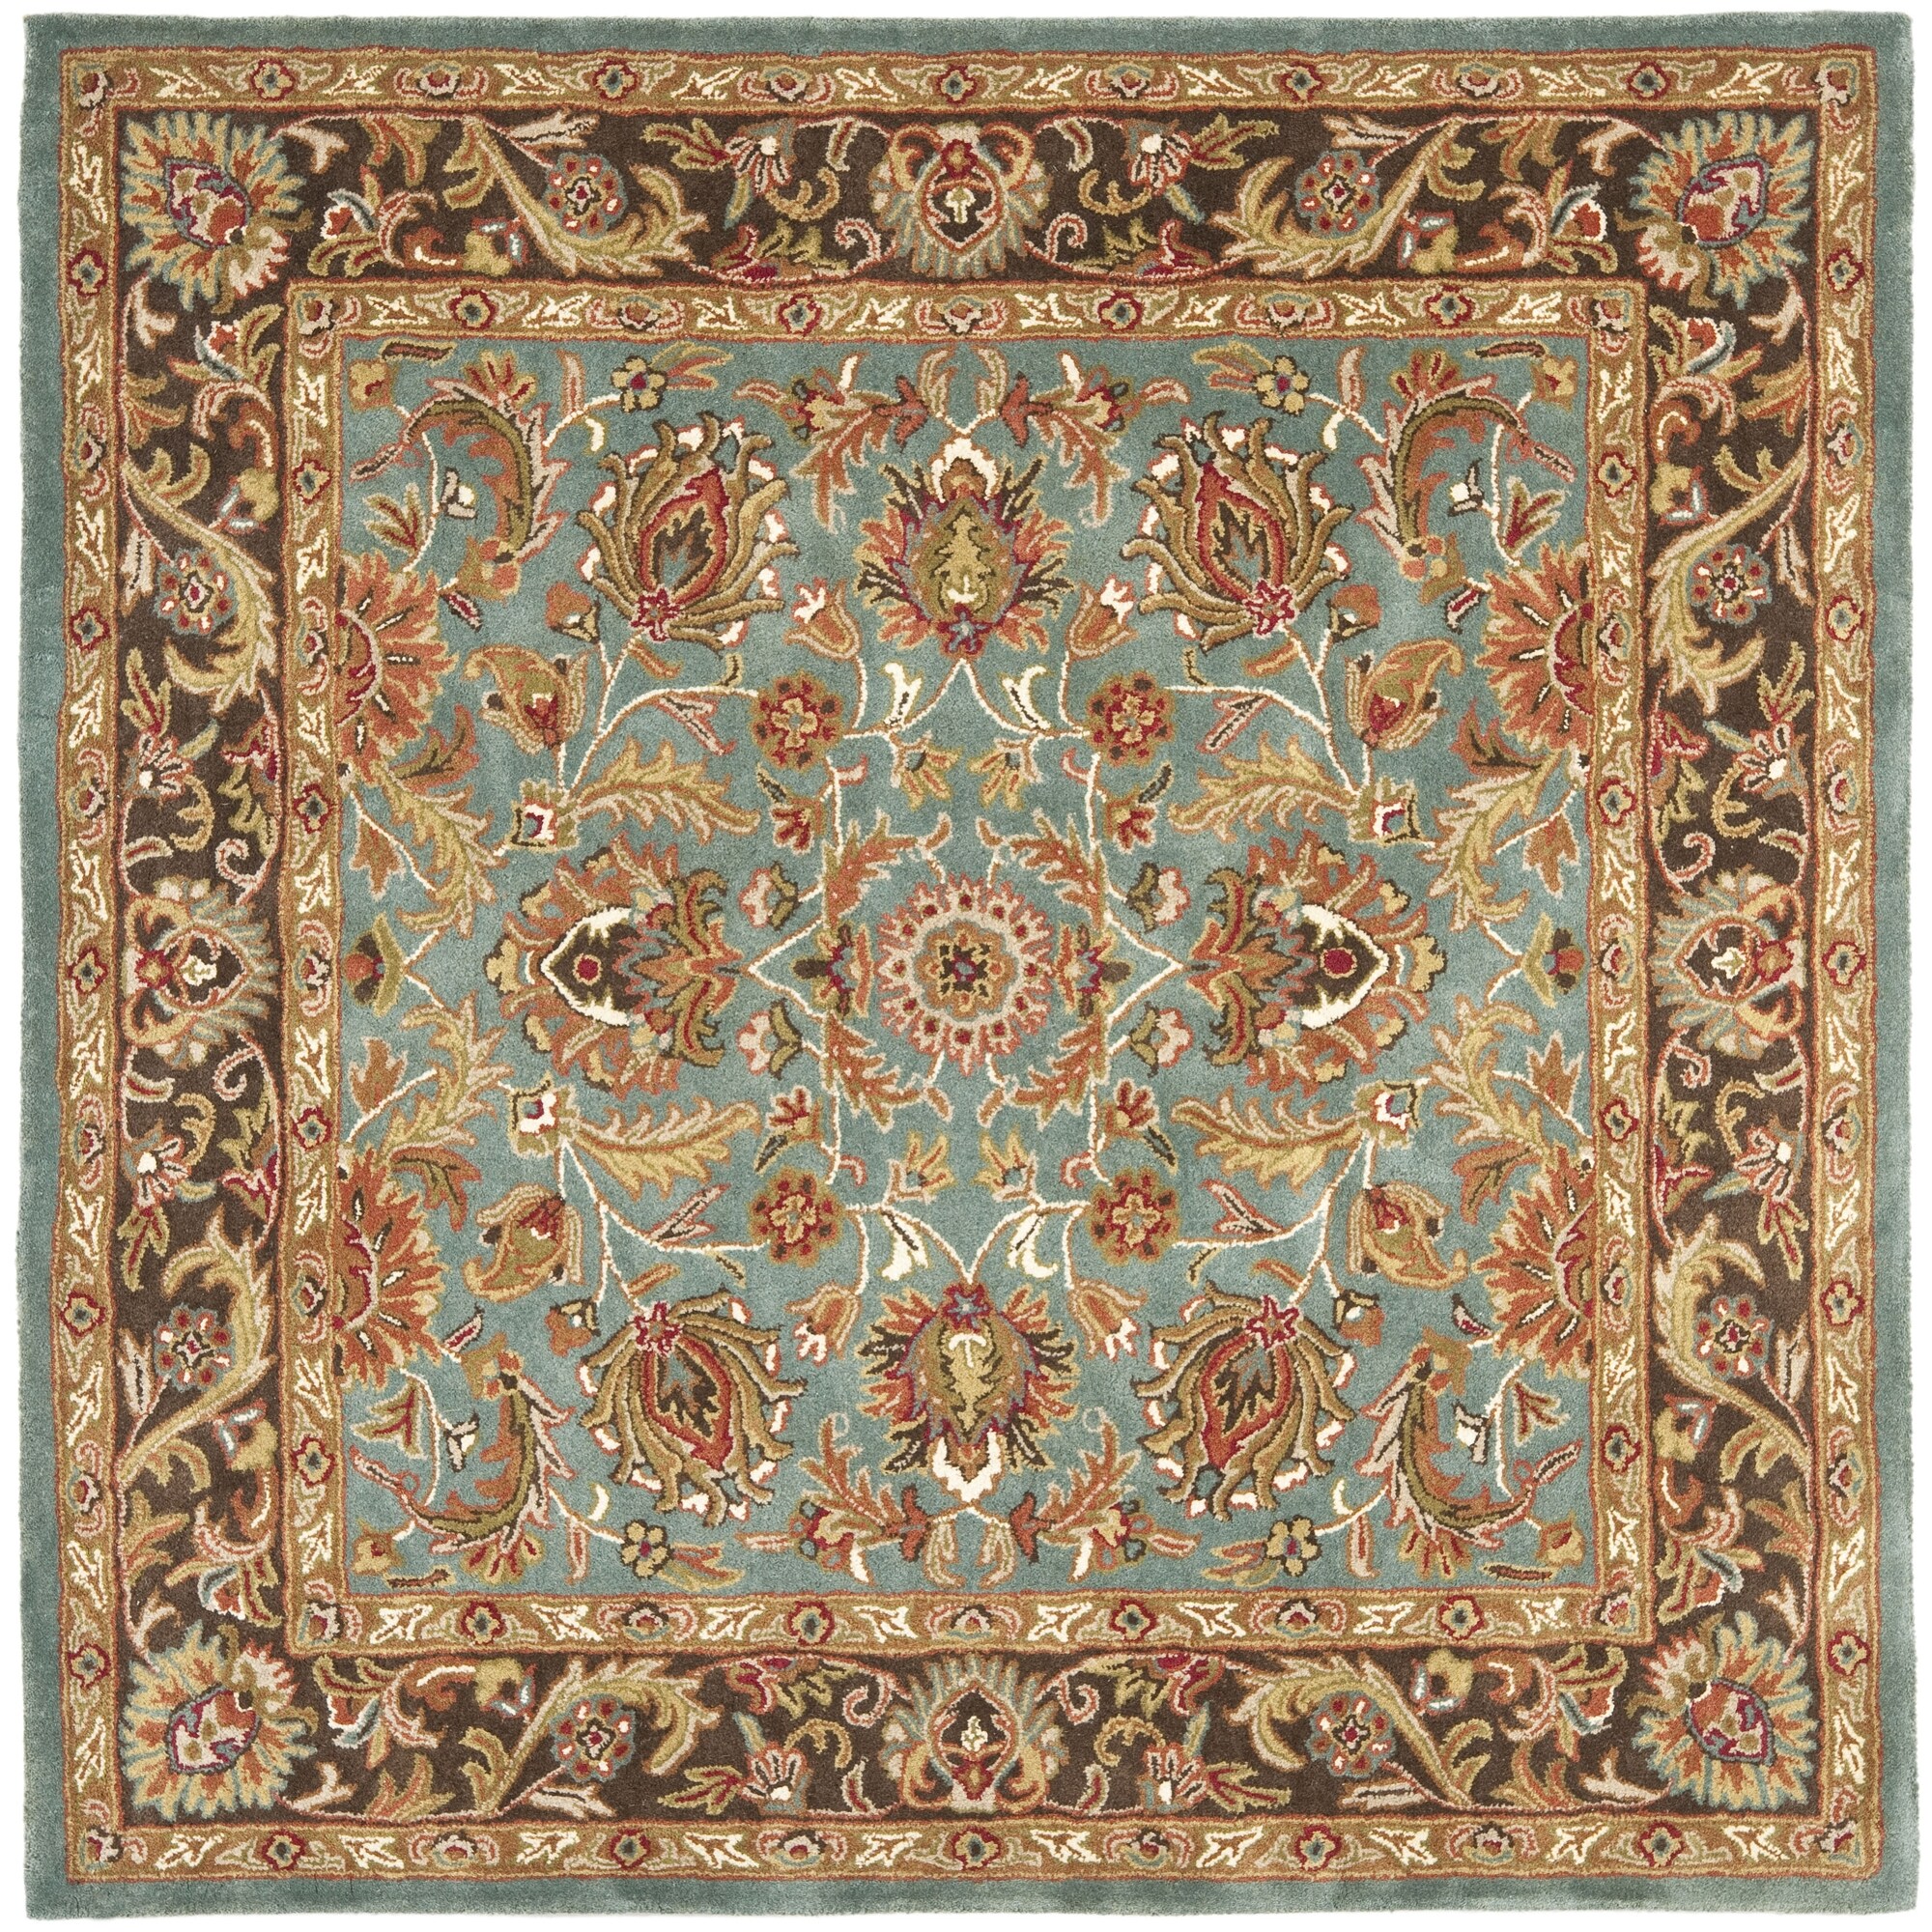 Handmade Heritage Blue/brown/tan Floral Wool Rug (6 Square)